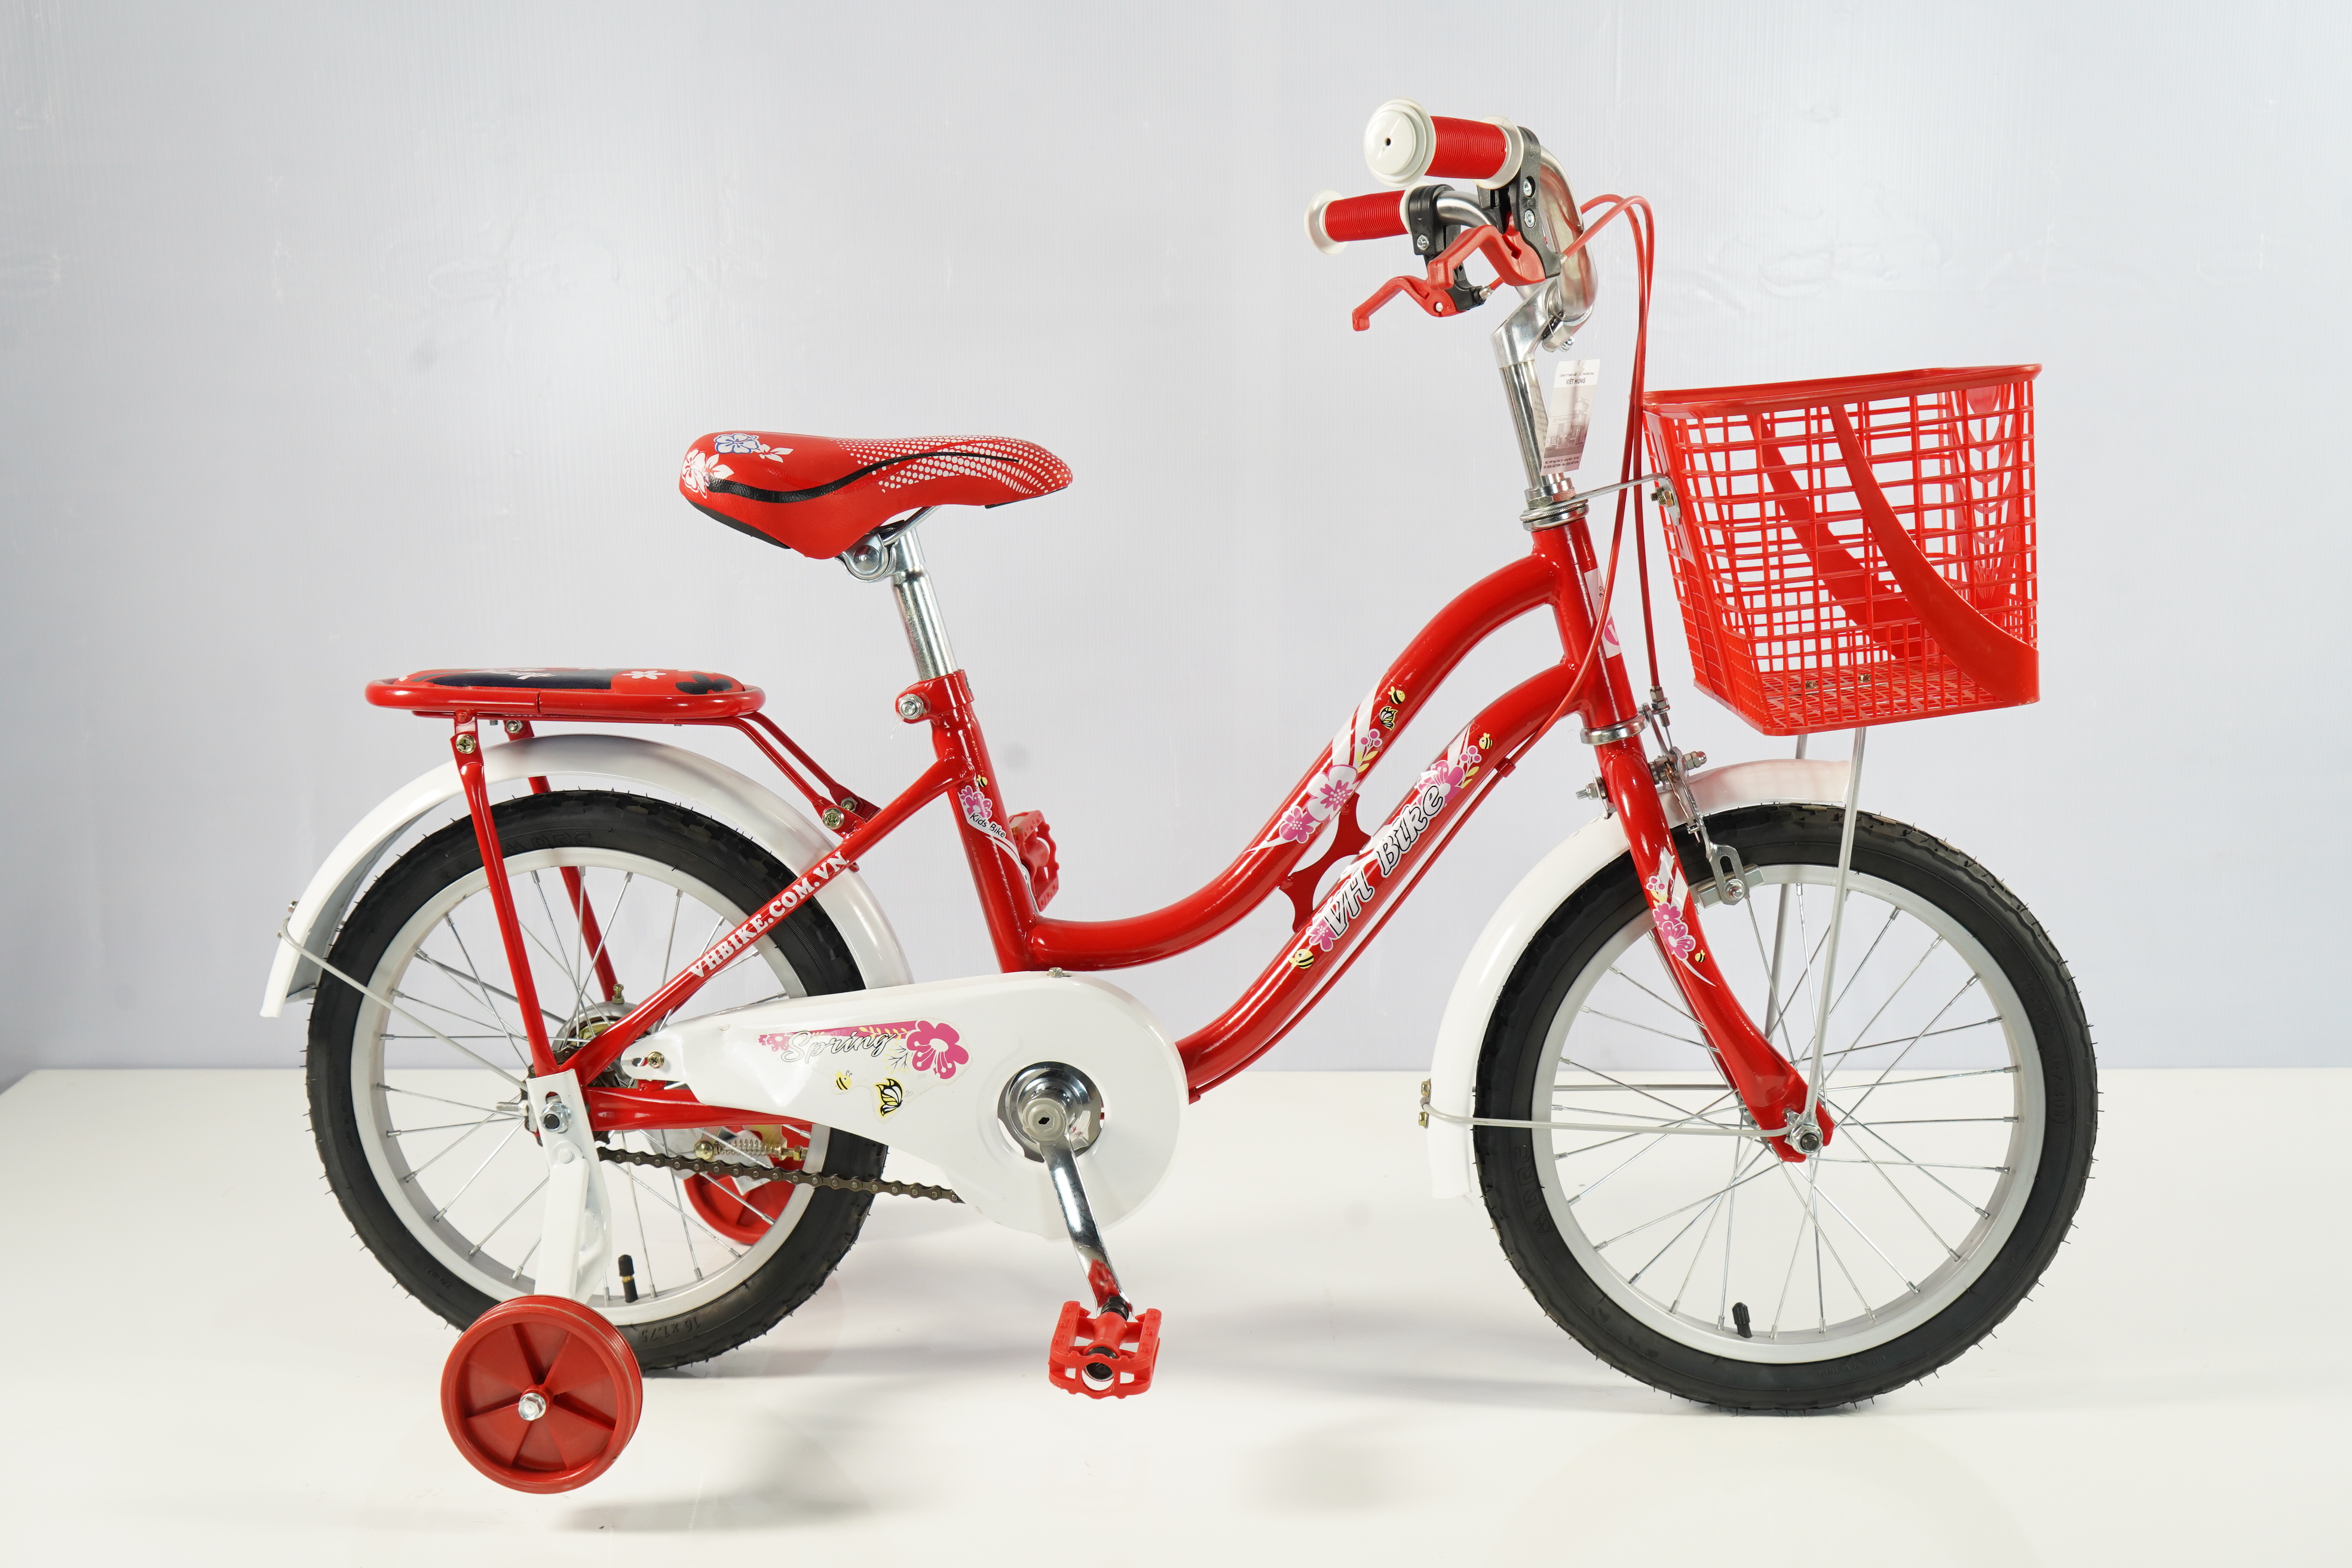 Xe đạp trẻ em VHBike Kids 16 inch - Phù hợp với bé từ 3 đến 6 tuổi